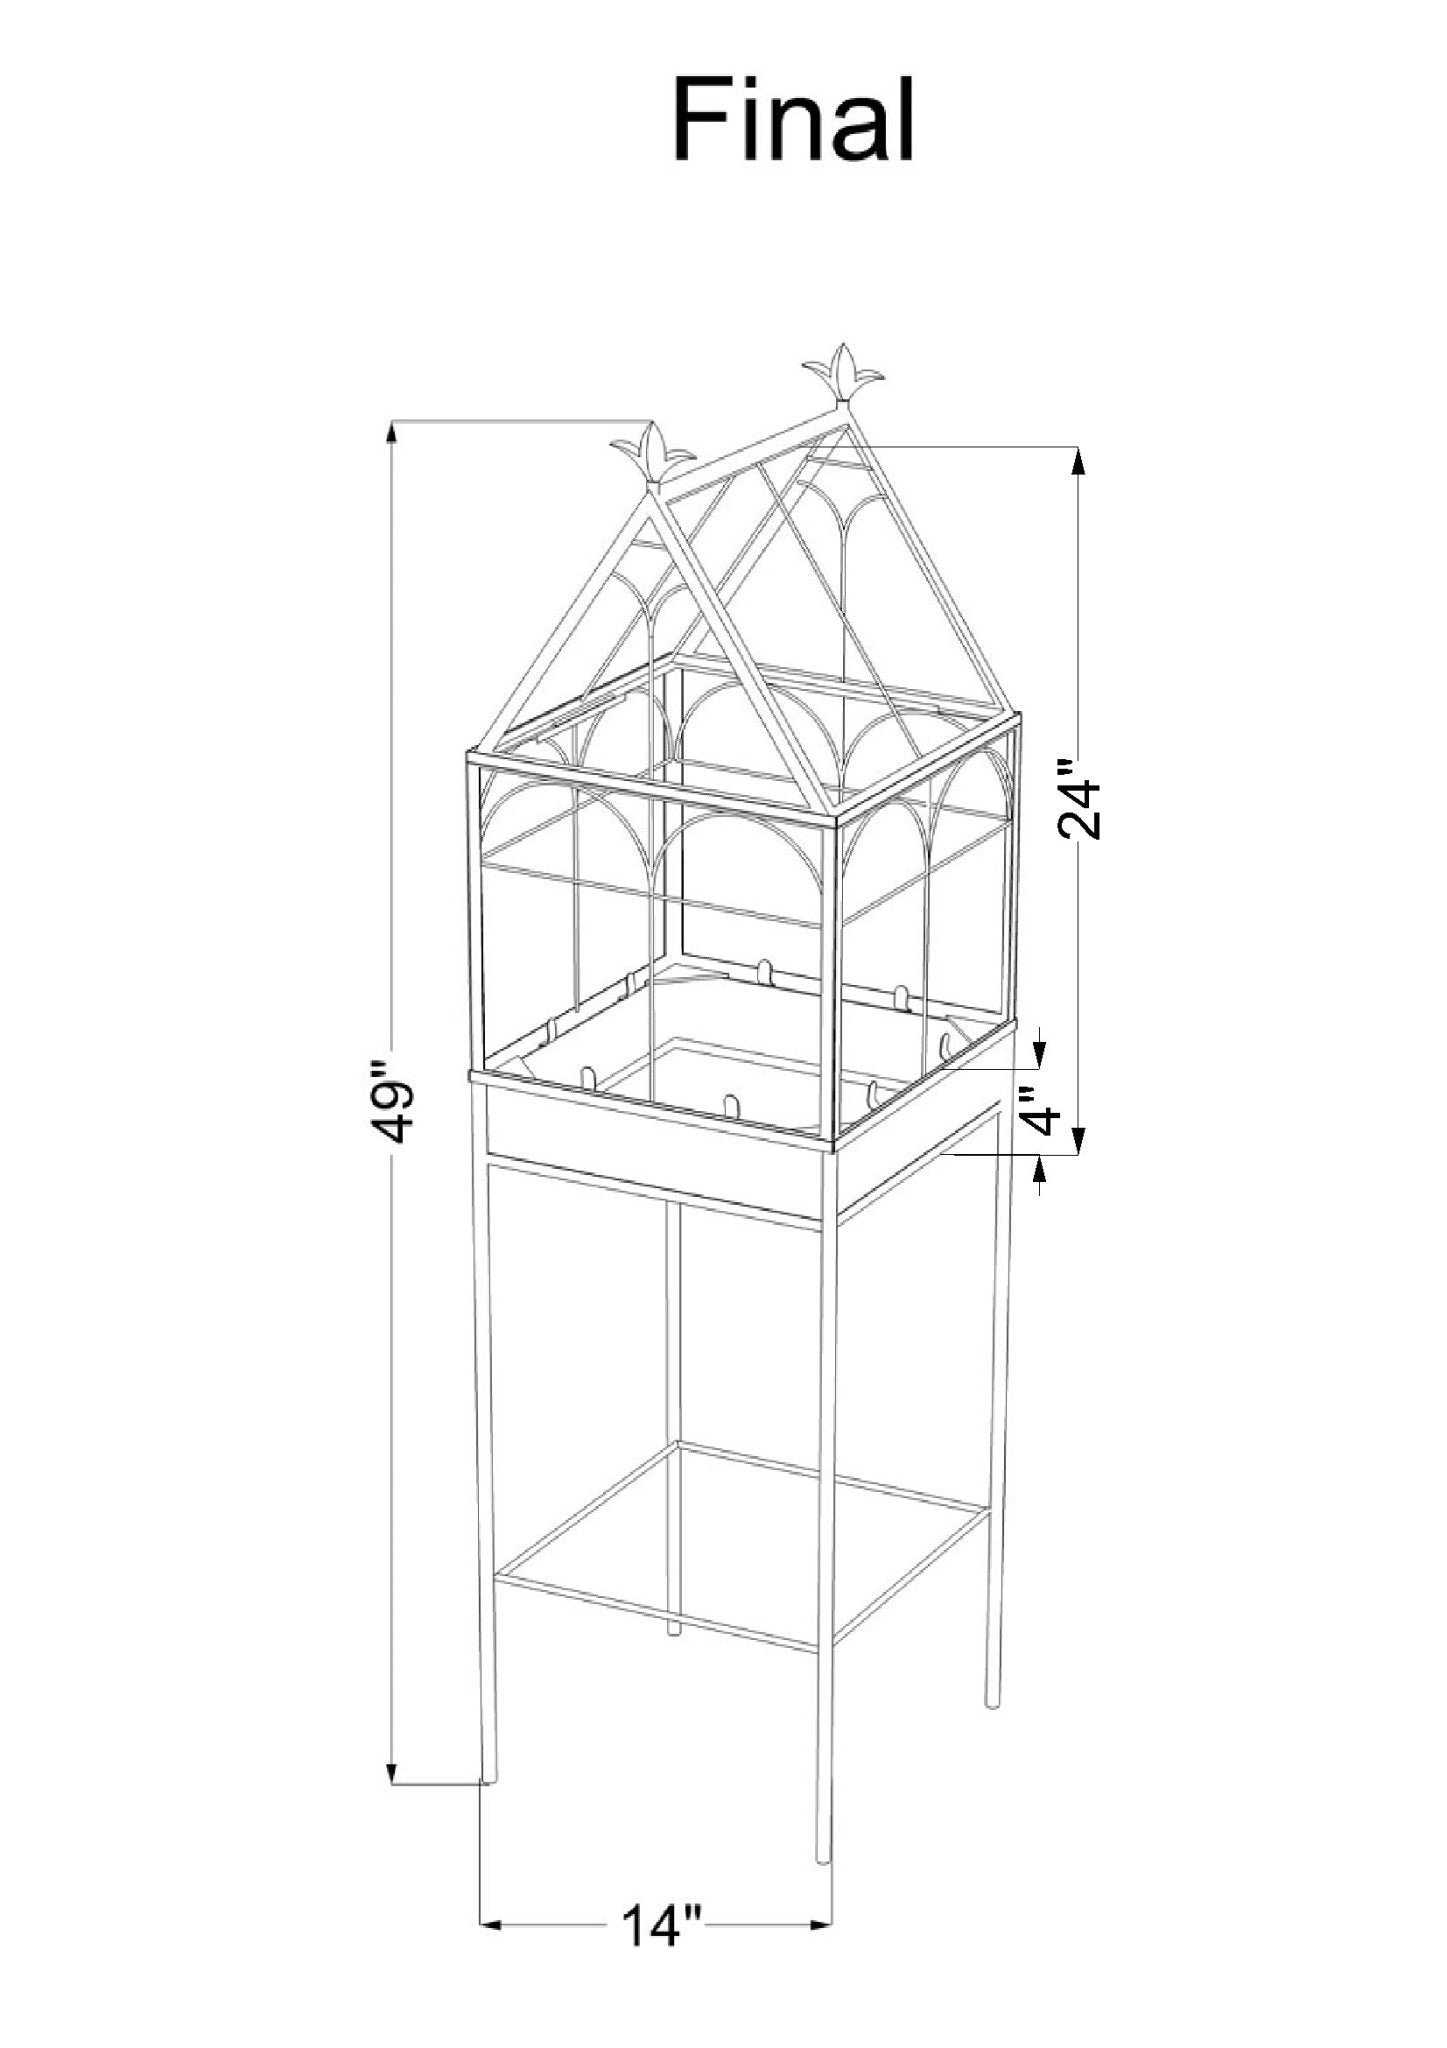 H Potter Terrarium Wardian Case Glass Plant Container